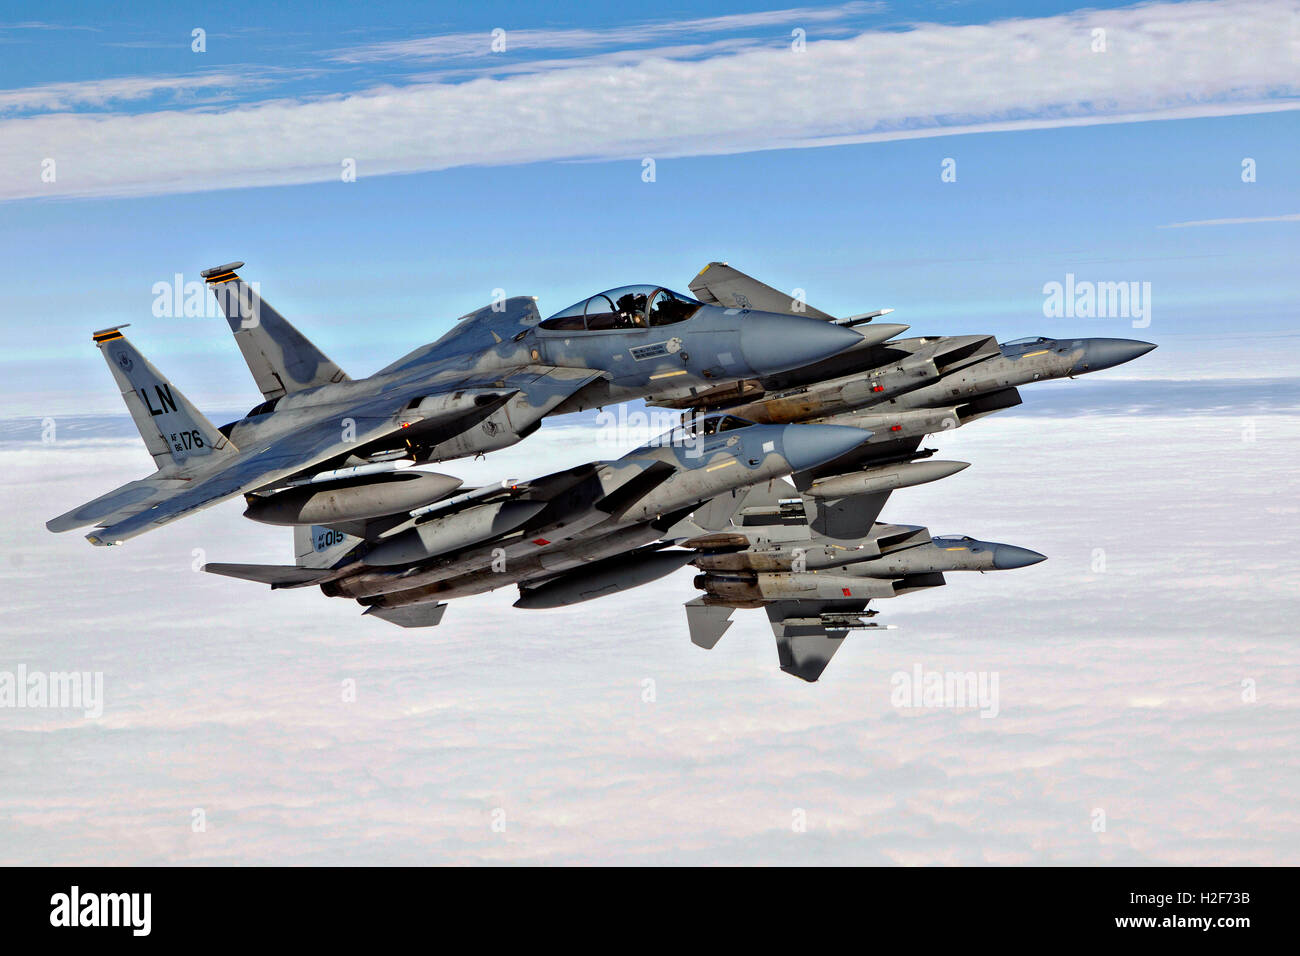 Stati Uniti Air Force F-15C Eagle aerei jet rompere la formazione durante le operazioni di volo presso la Royal Air Force Lakenheath station Luglio 22, 2015 in Suffolk, Regno Unito. Foto Stock